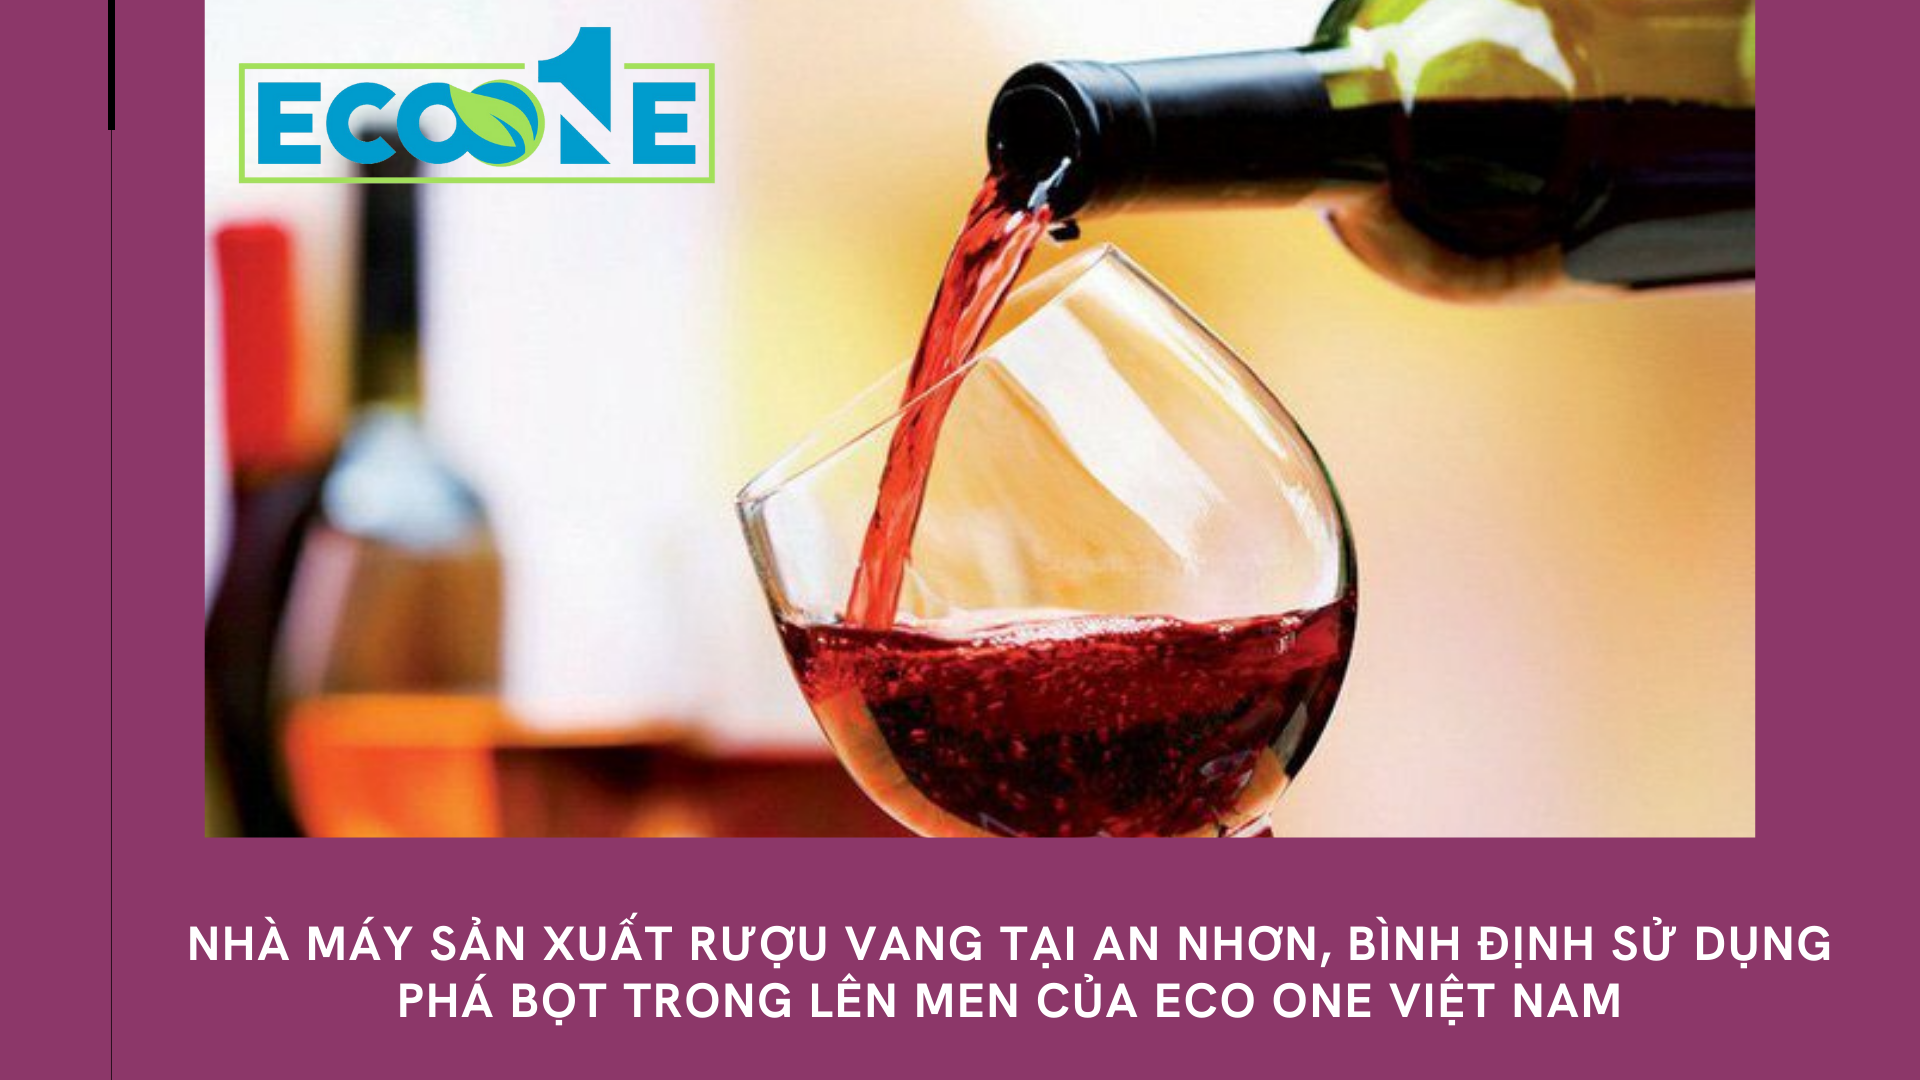 Nhà máy sản xuất rượu vang tại An Nhơn, Bình định sử dụng phá bọt trong lên men của Eco One Việt Nam